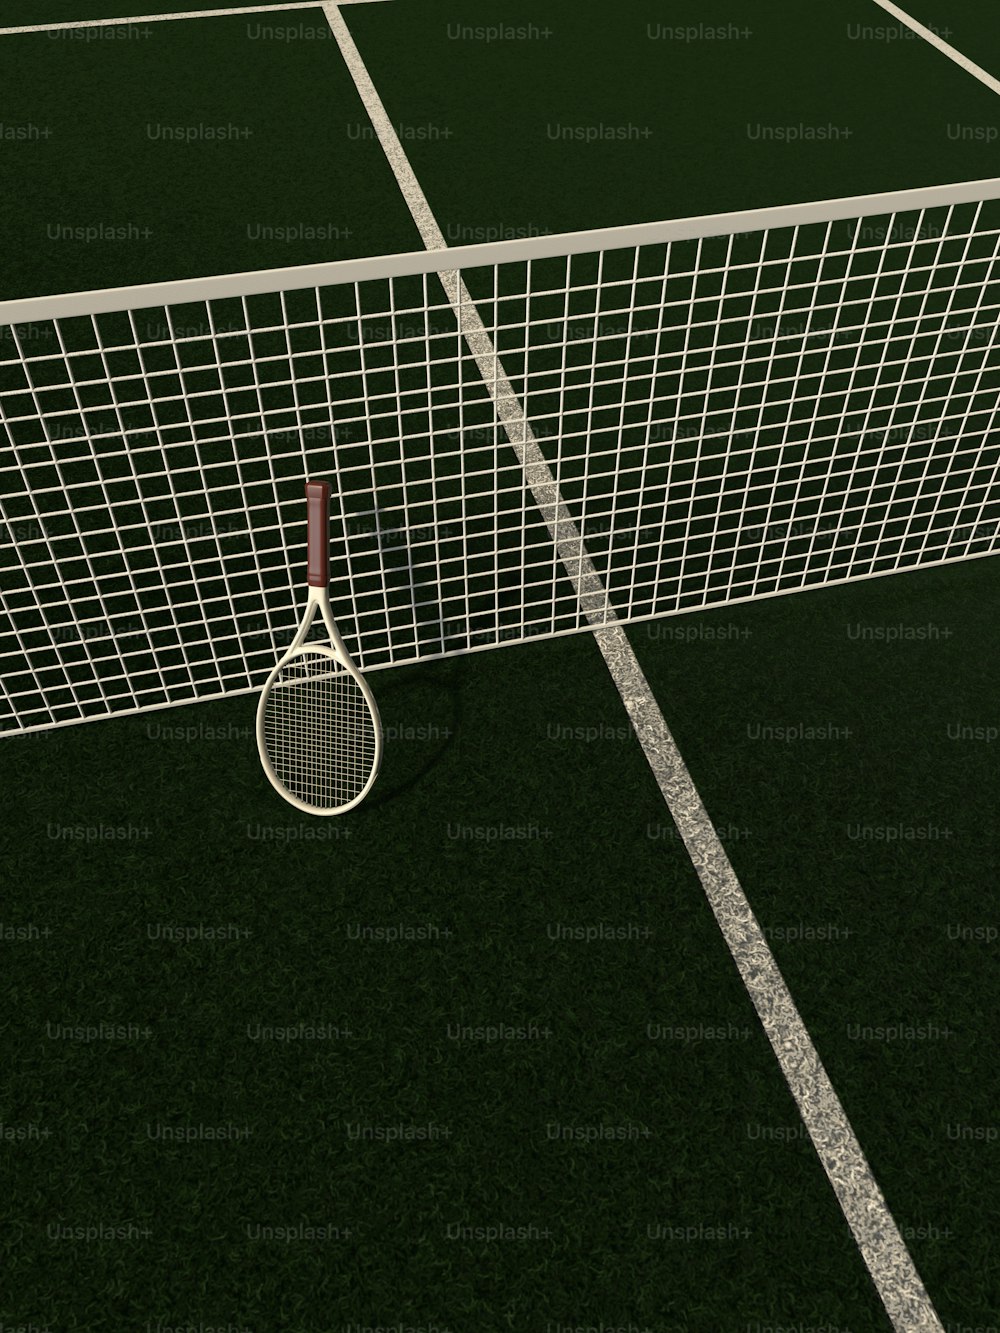 ネットとテニスボールのあるテニスコート